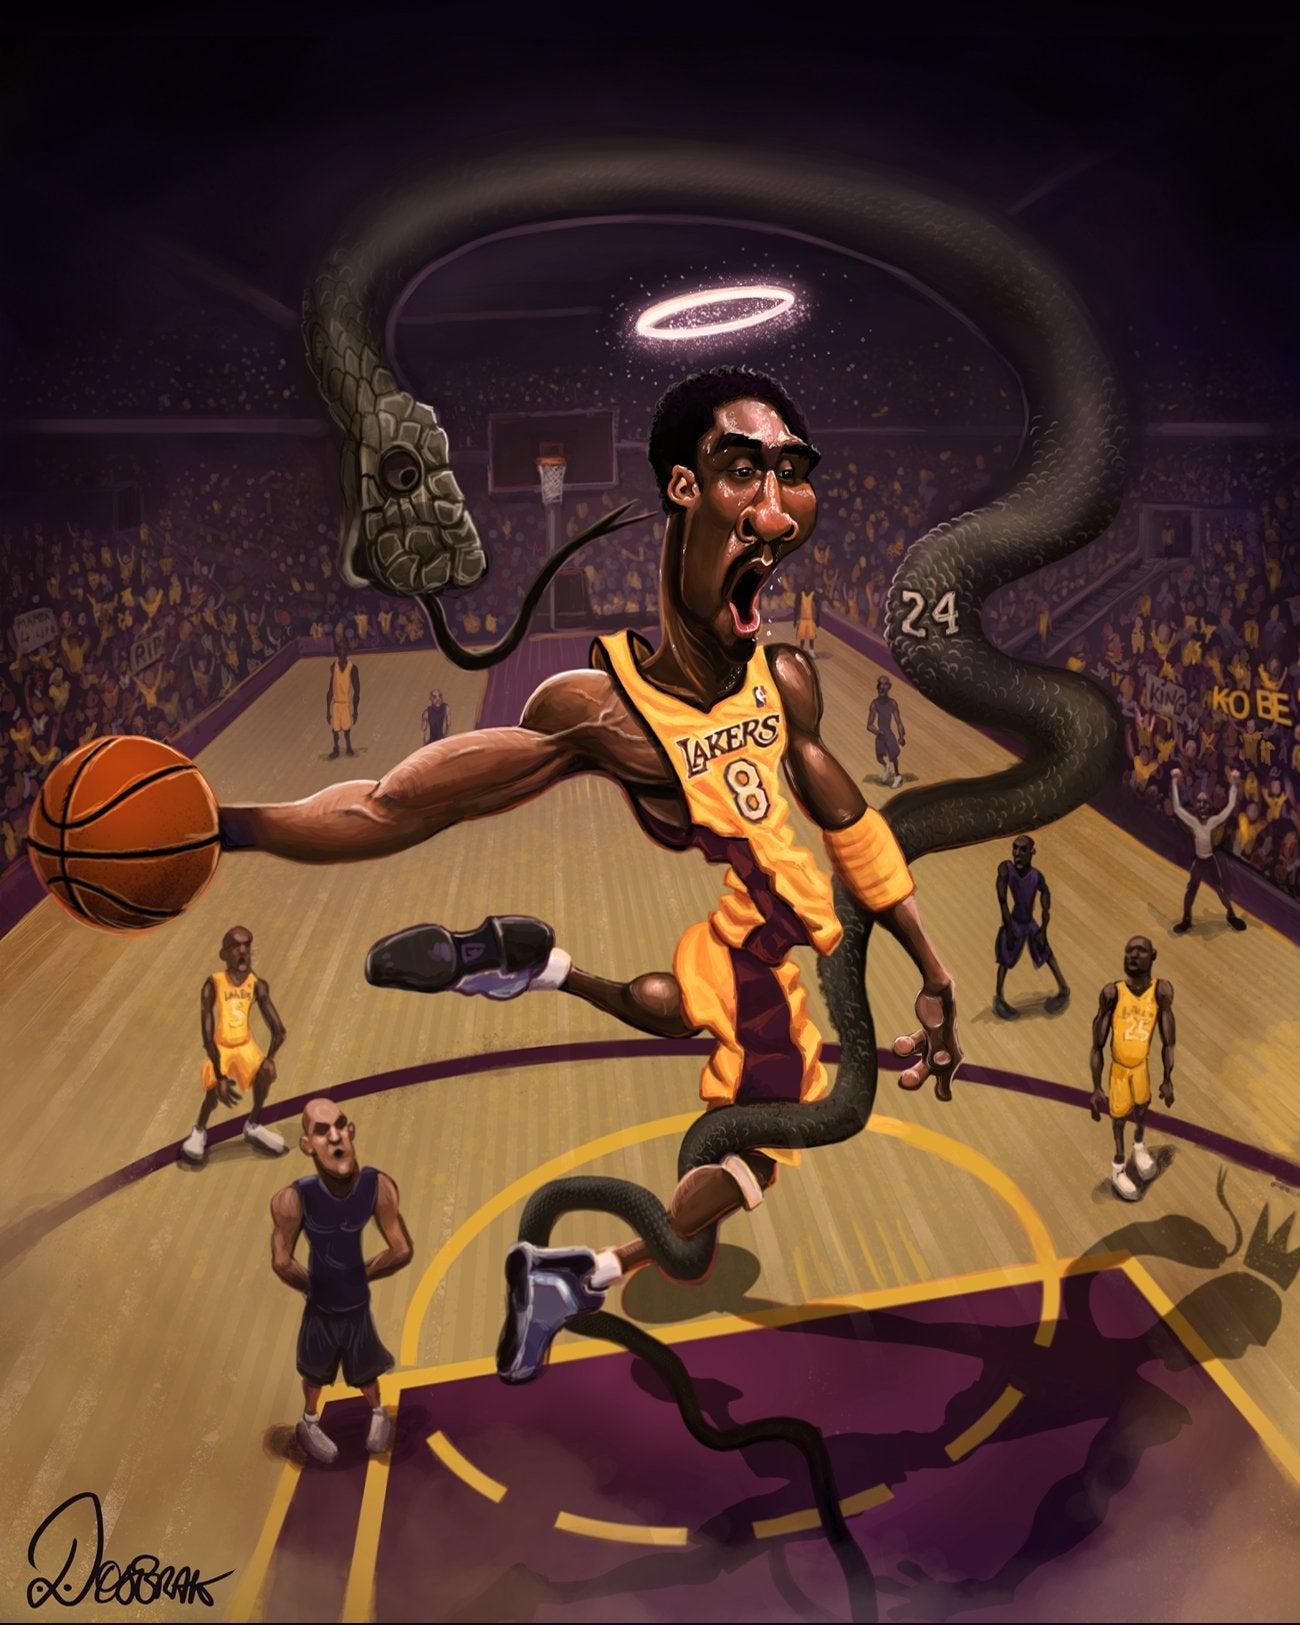 Kobe Bryant: The Black Mamba